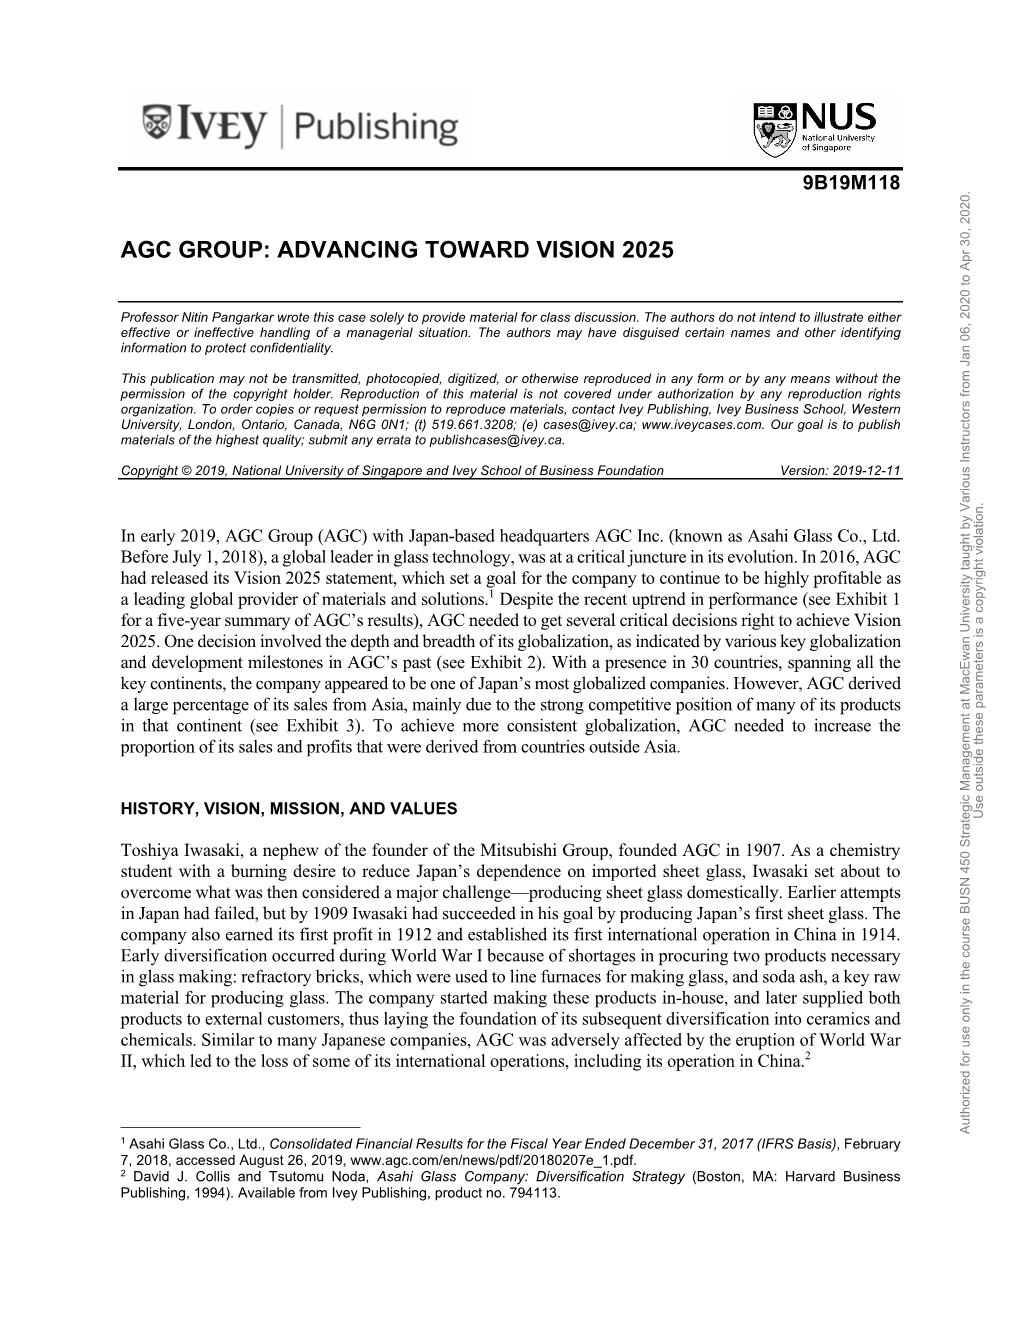 Agc Group: Advancing Toward Vision 2025